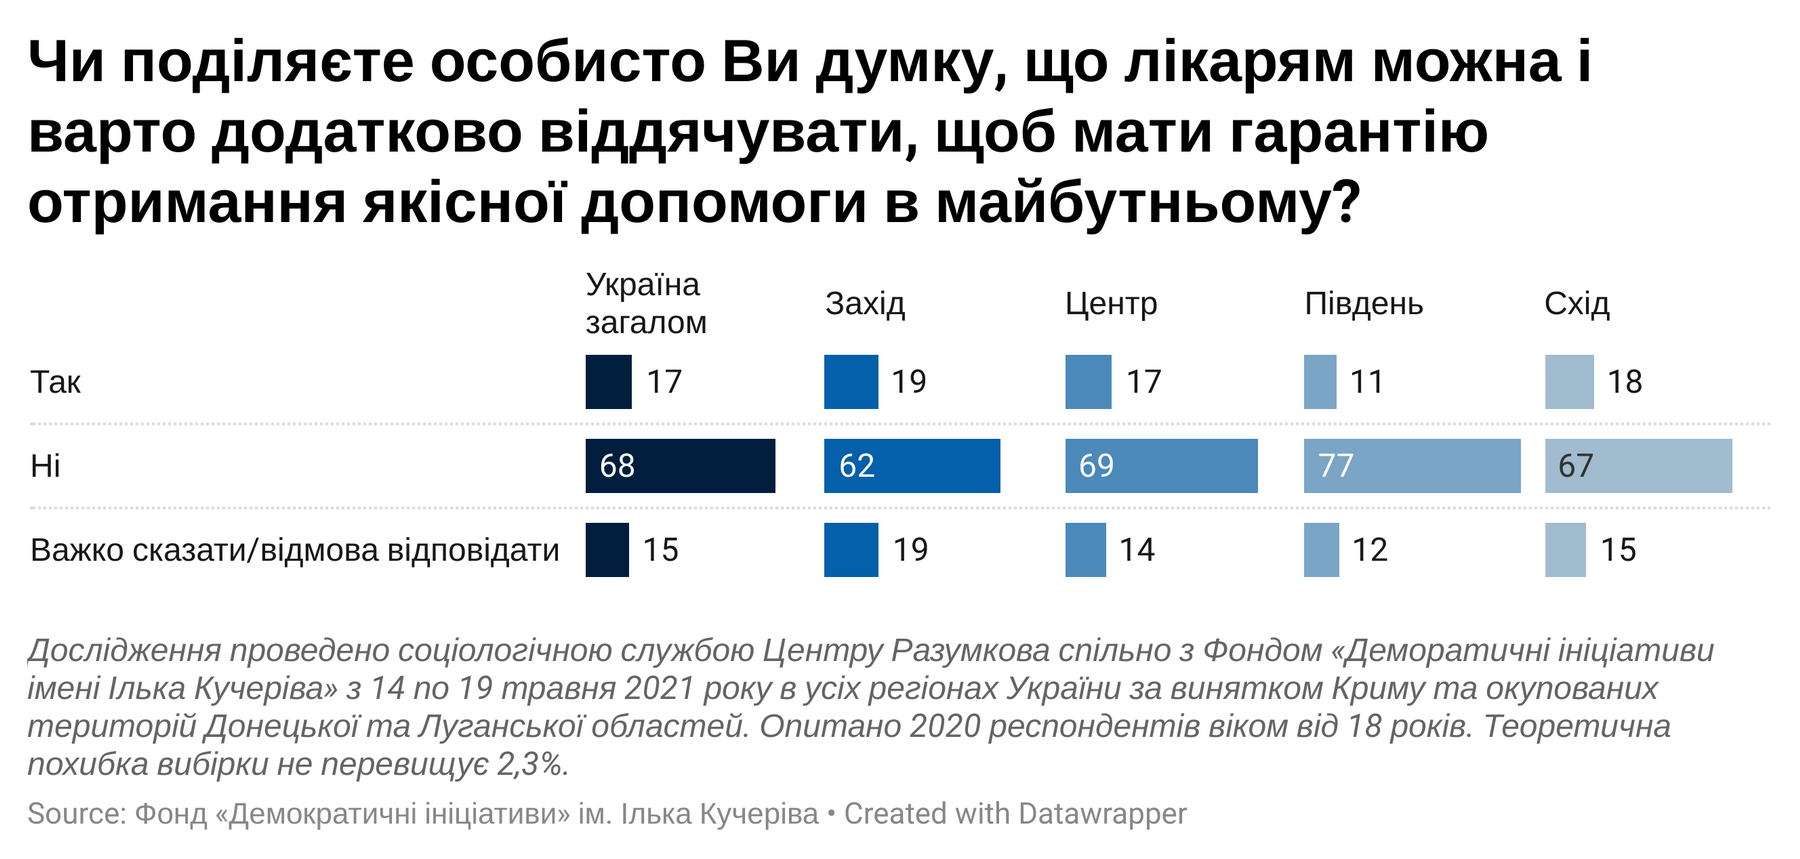 Платити лікарям додатково за кращу якість послуг не готові 68% опитаних українців